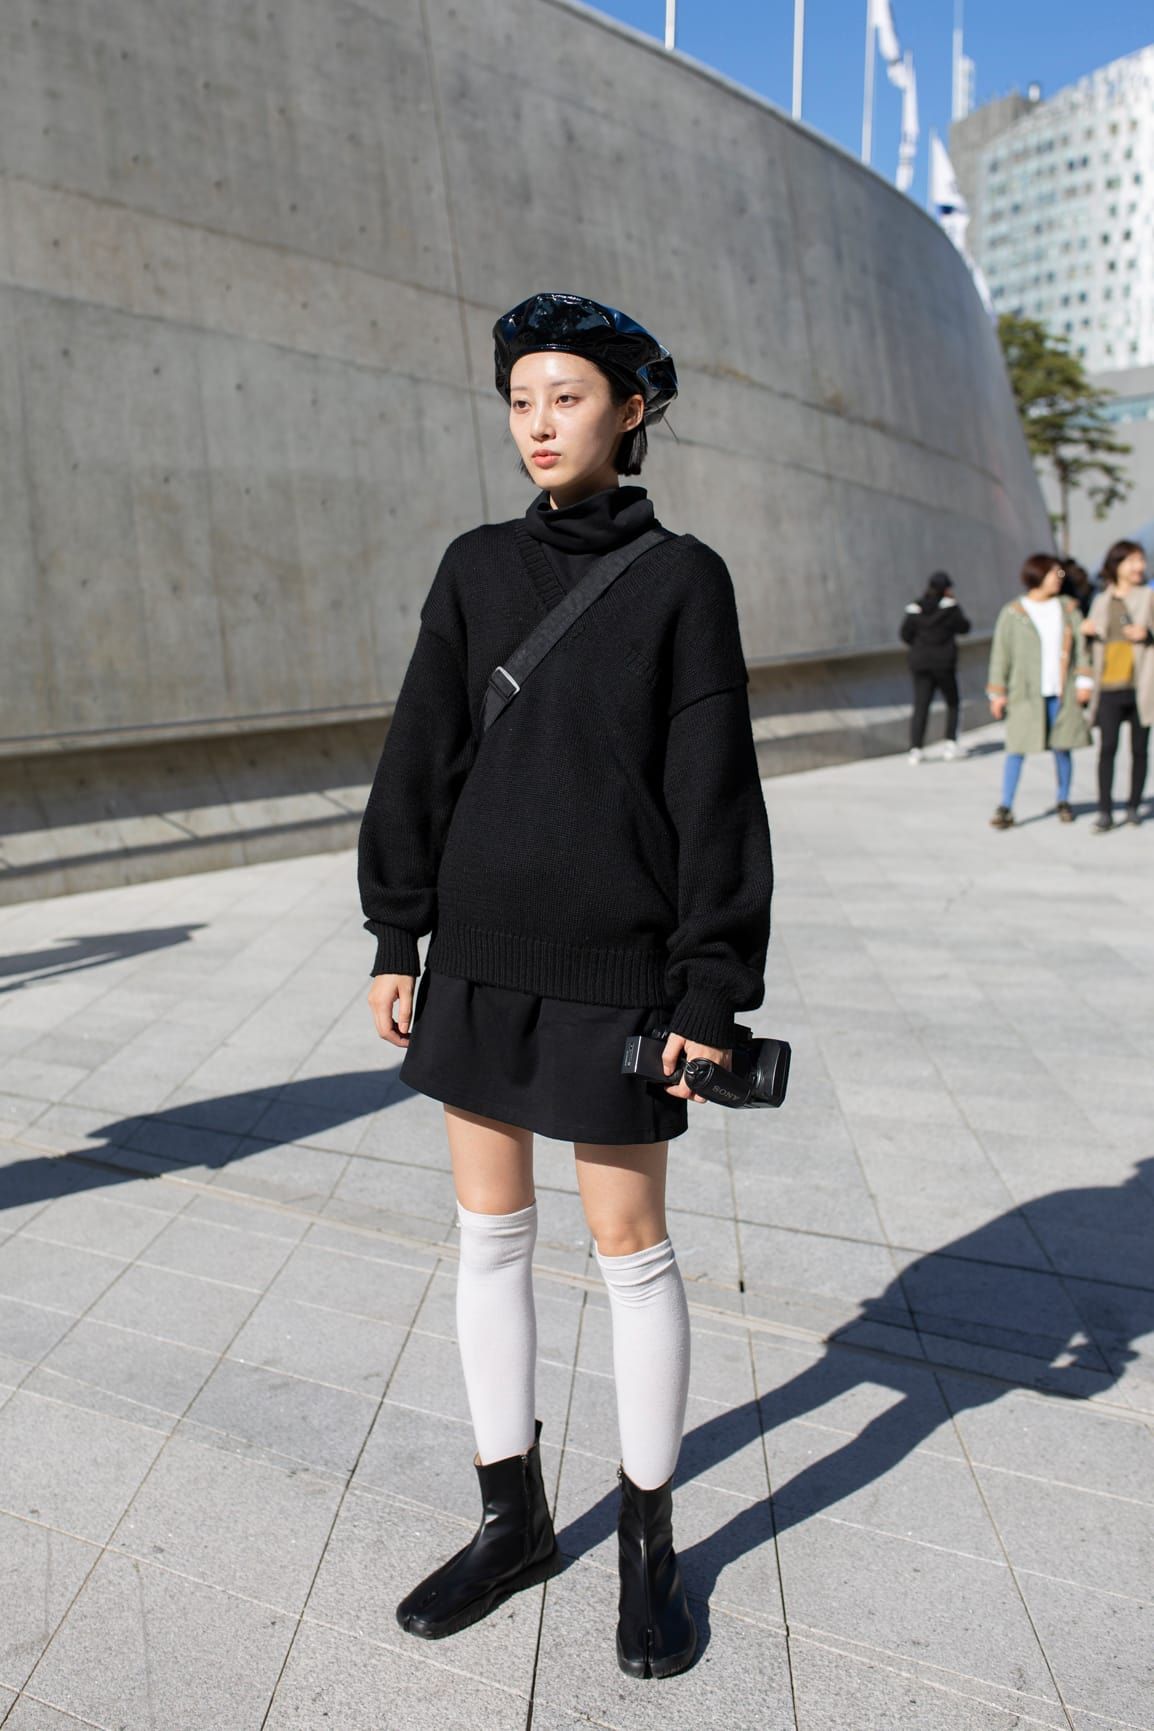 Tips Padu-padan Knitwear a La Perempuan Modis Korea Selatan